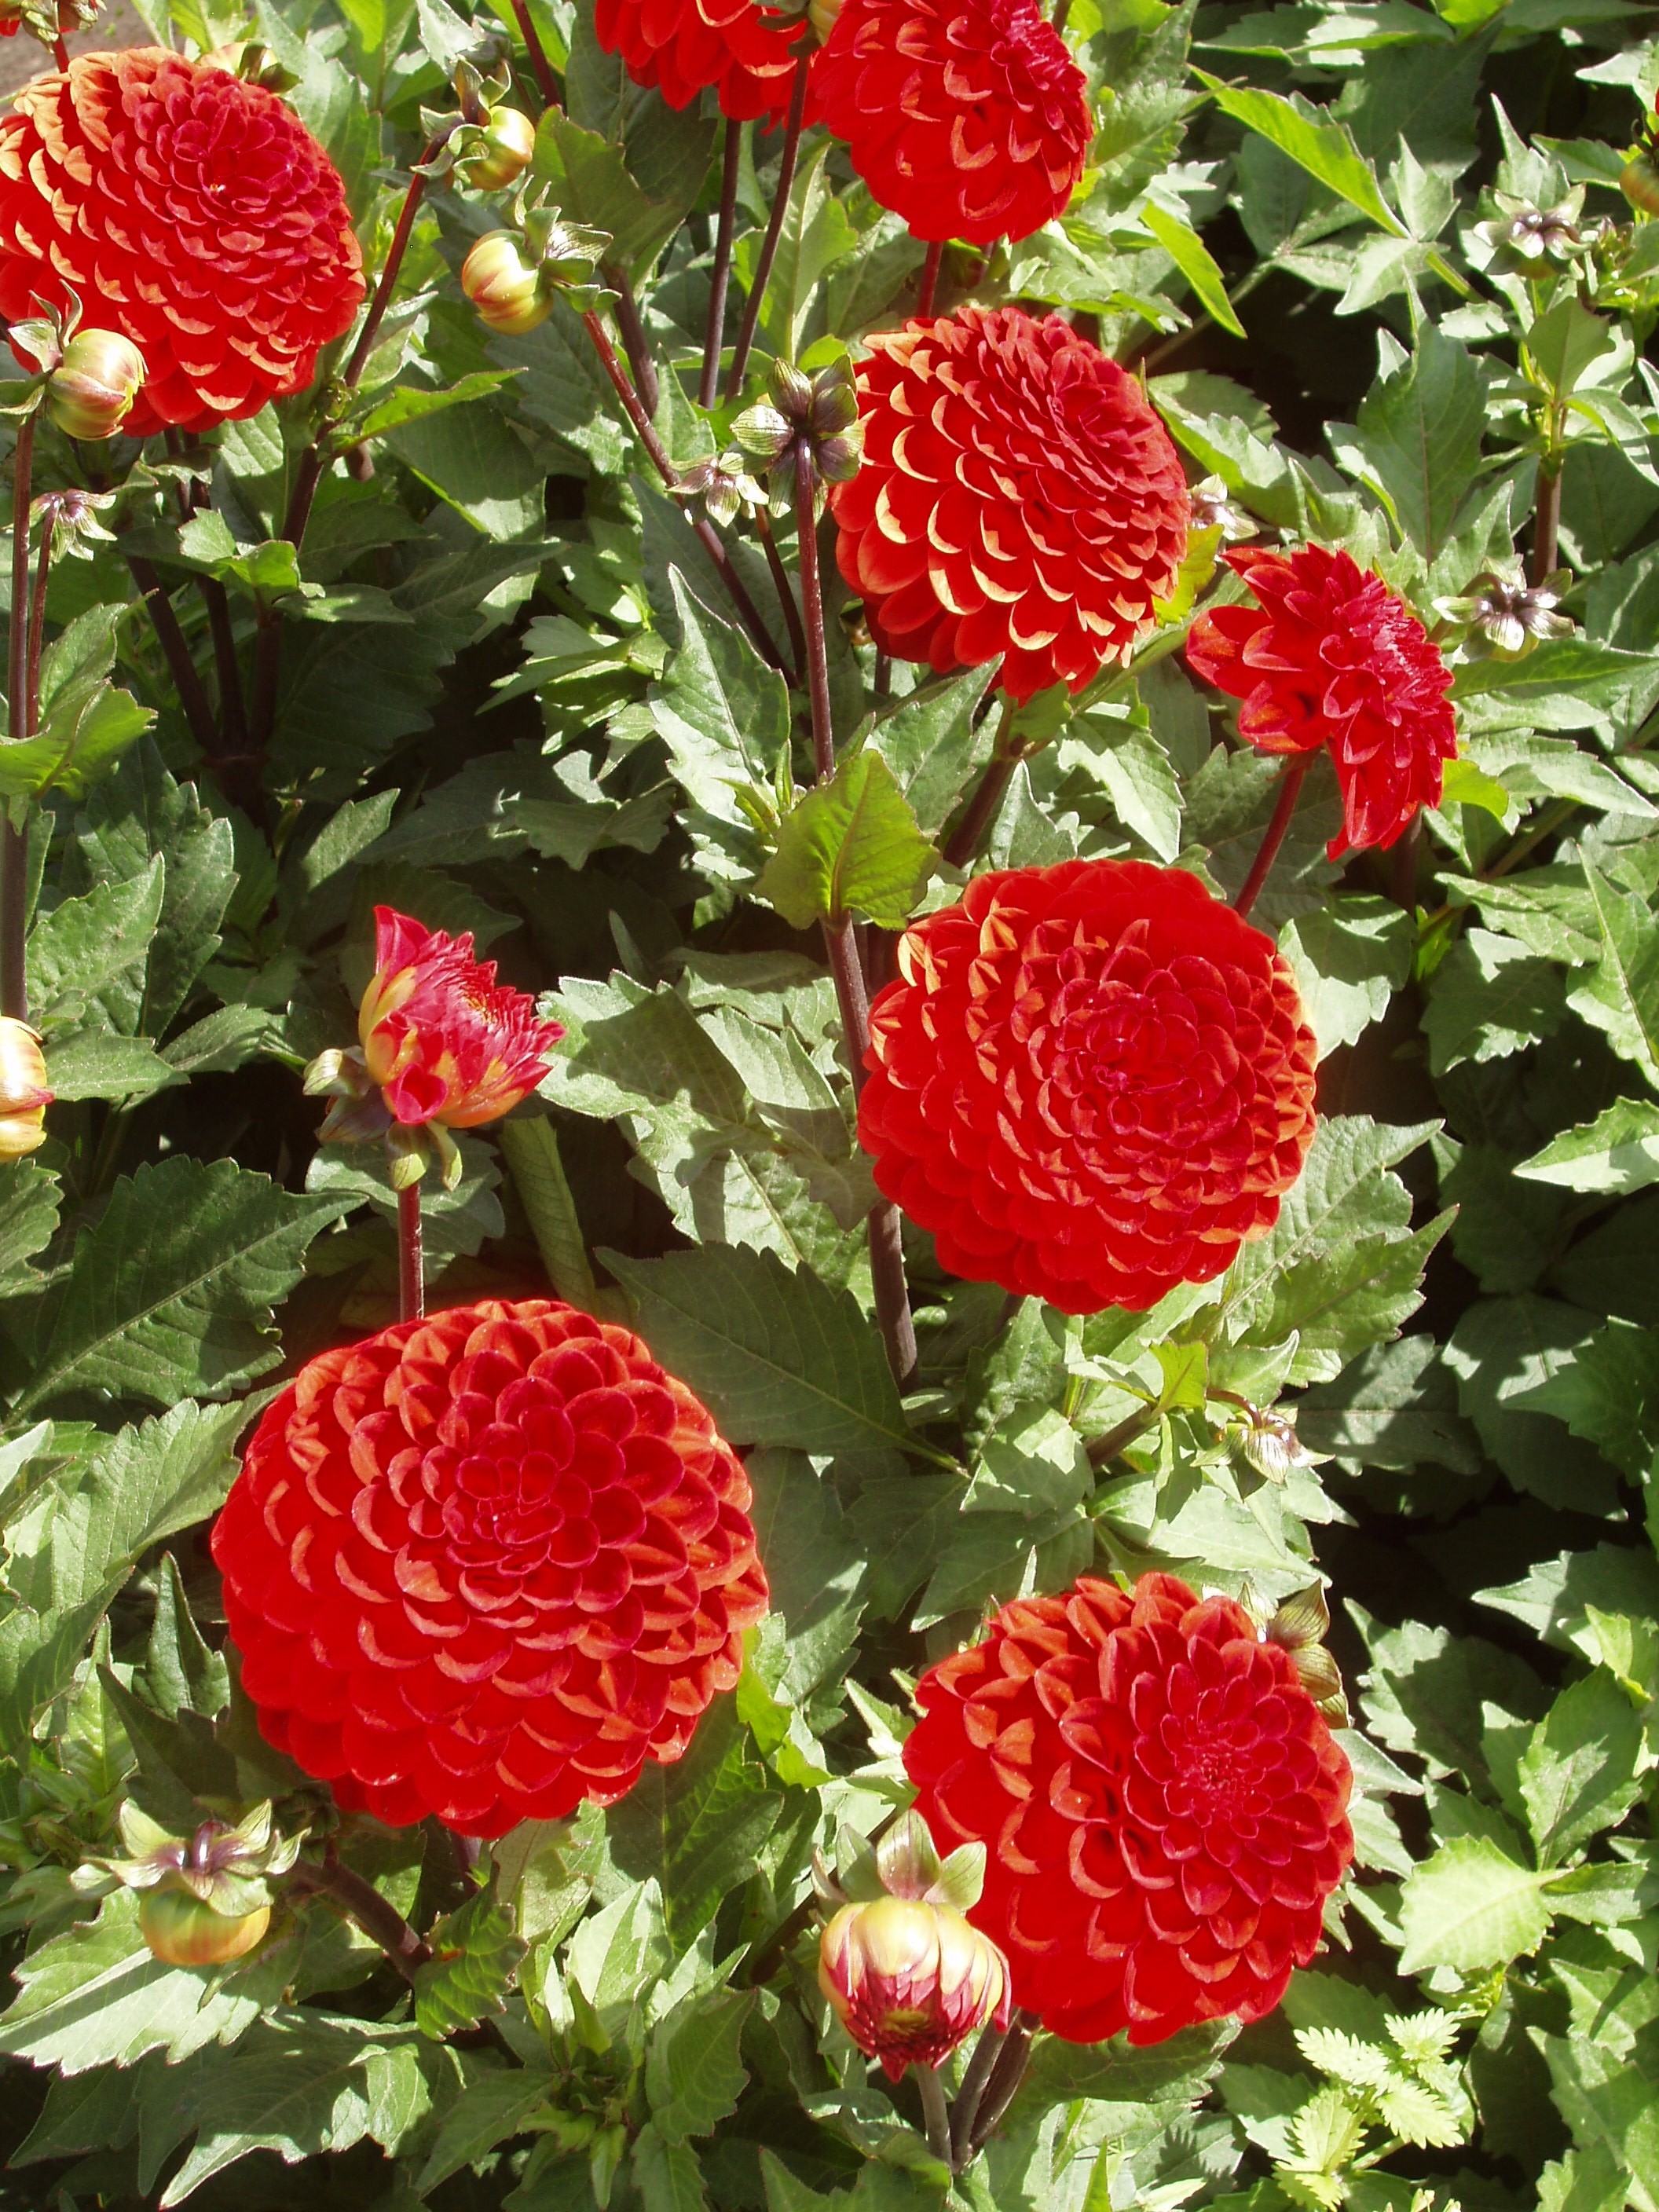 Rode-pompon-dahlia-knollen-bloemen